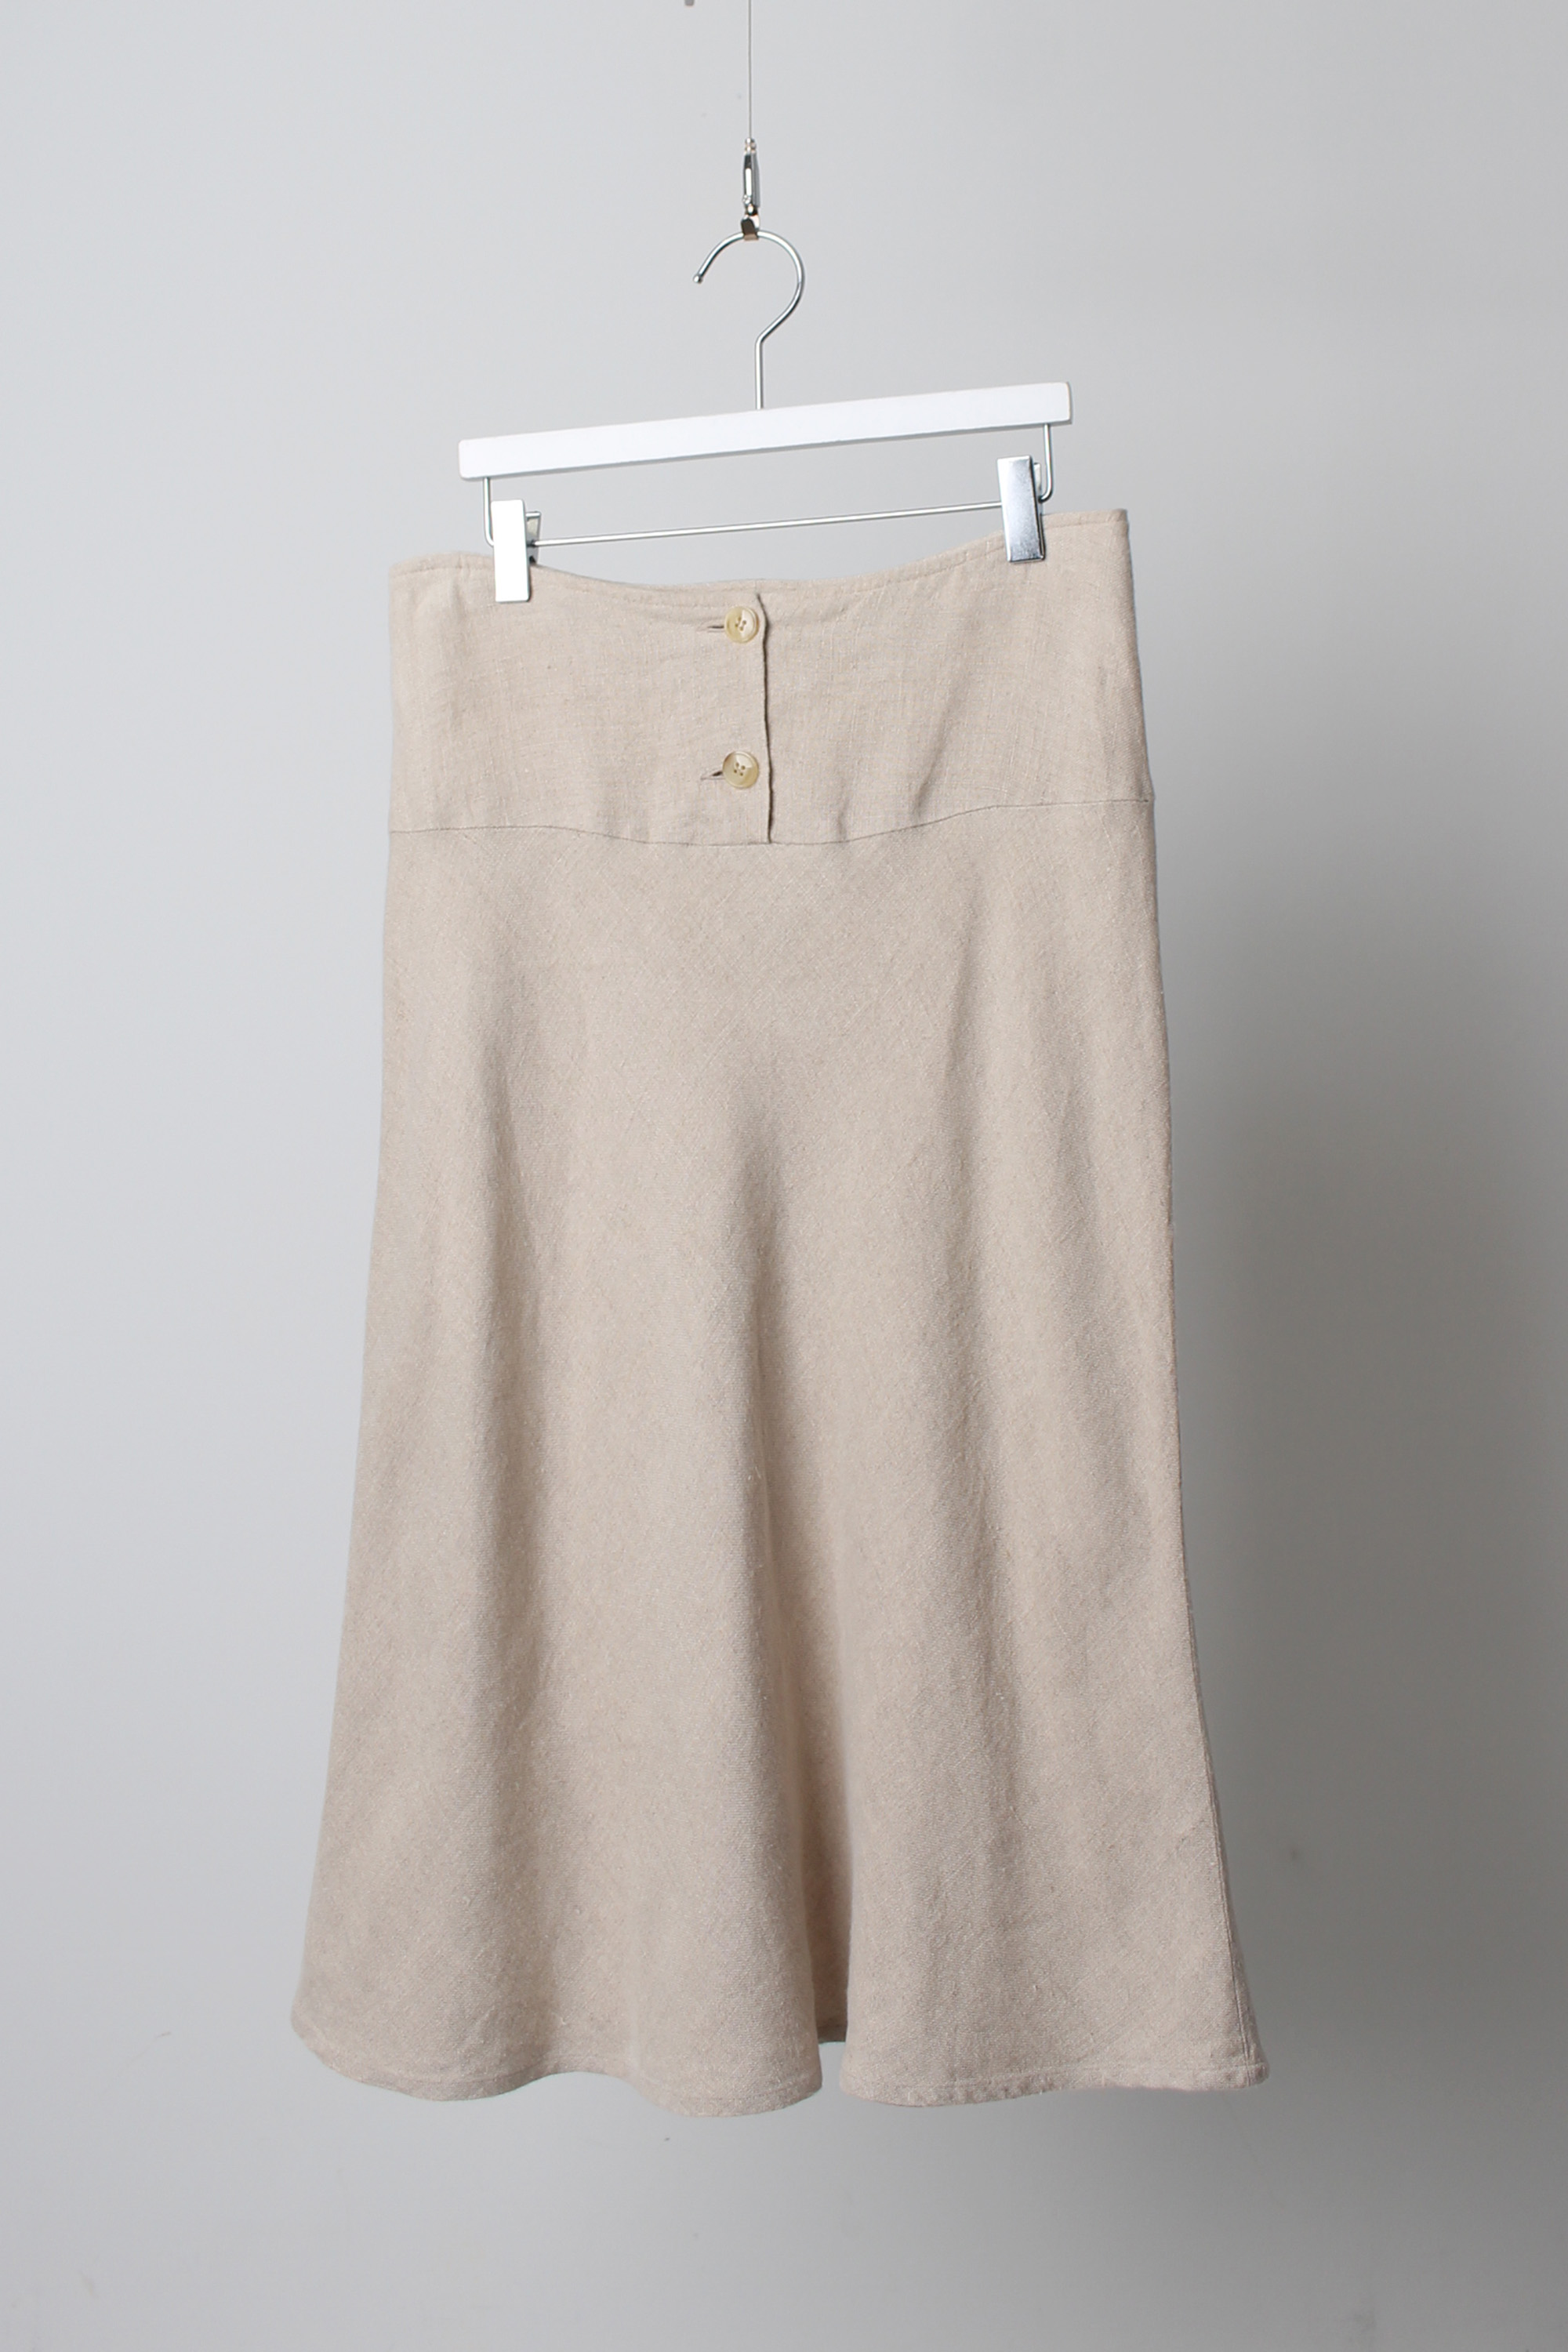 Agnes b linen skirt